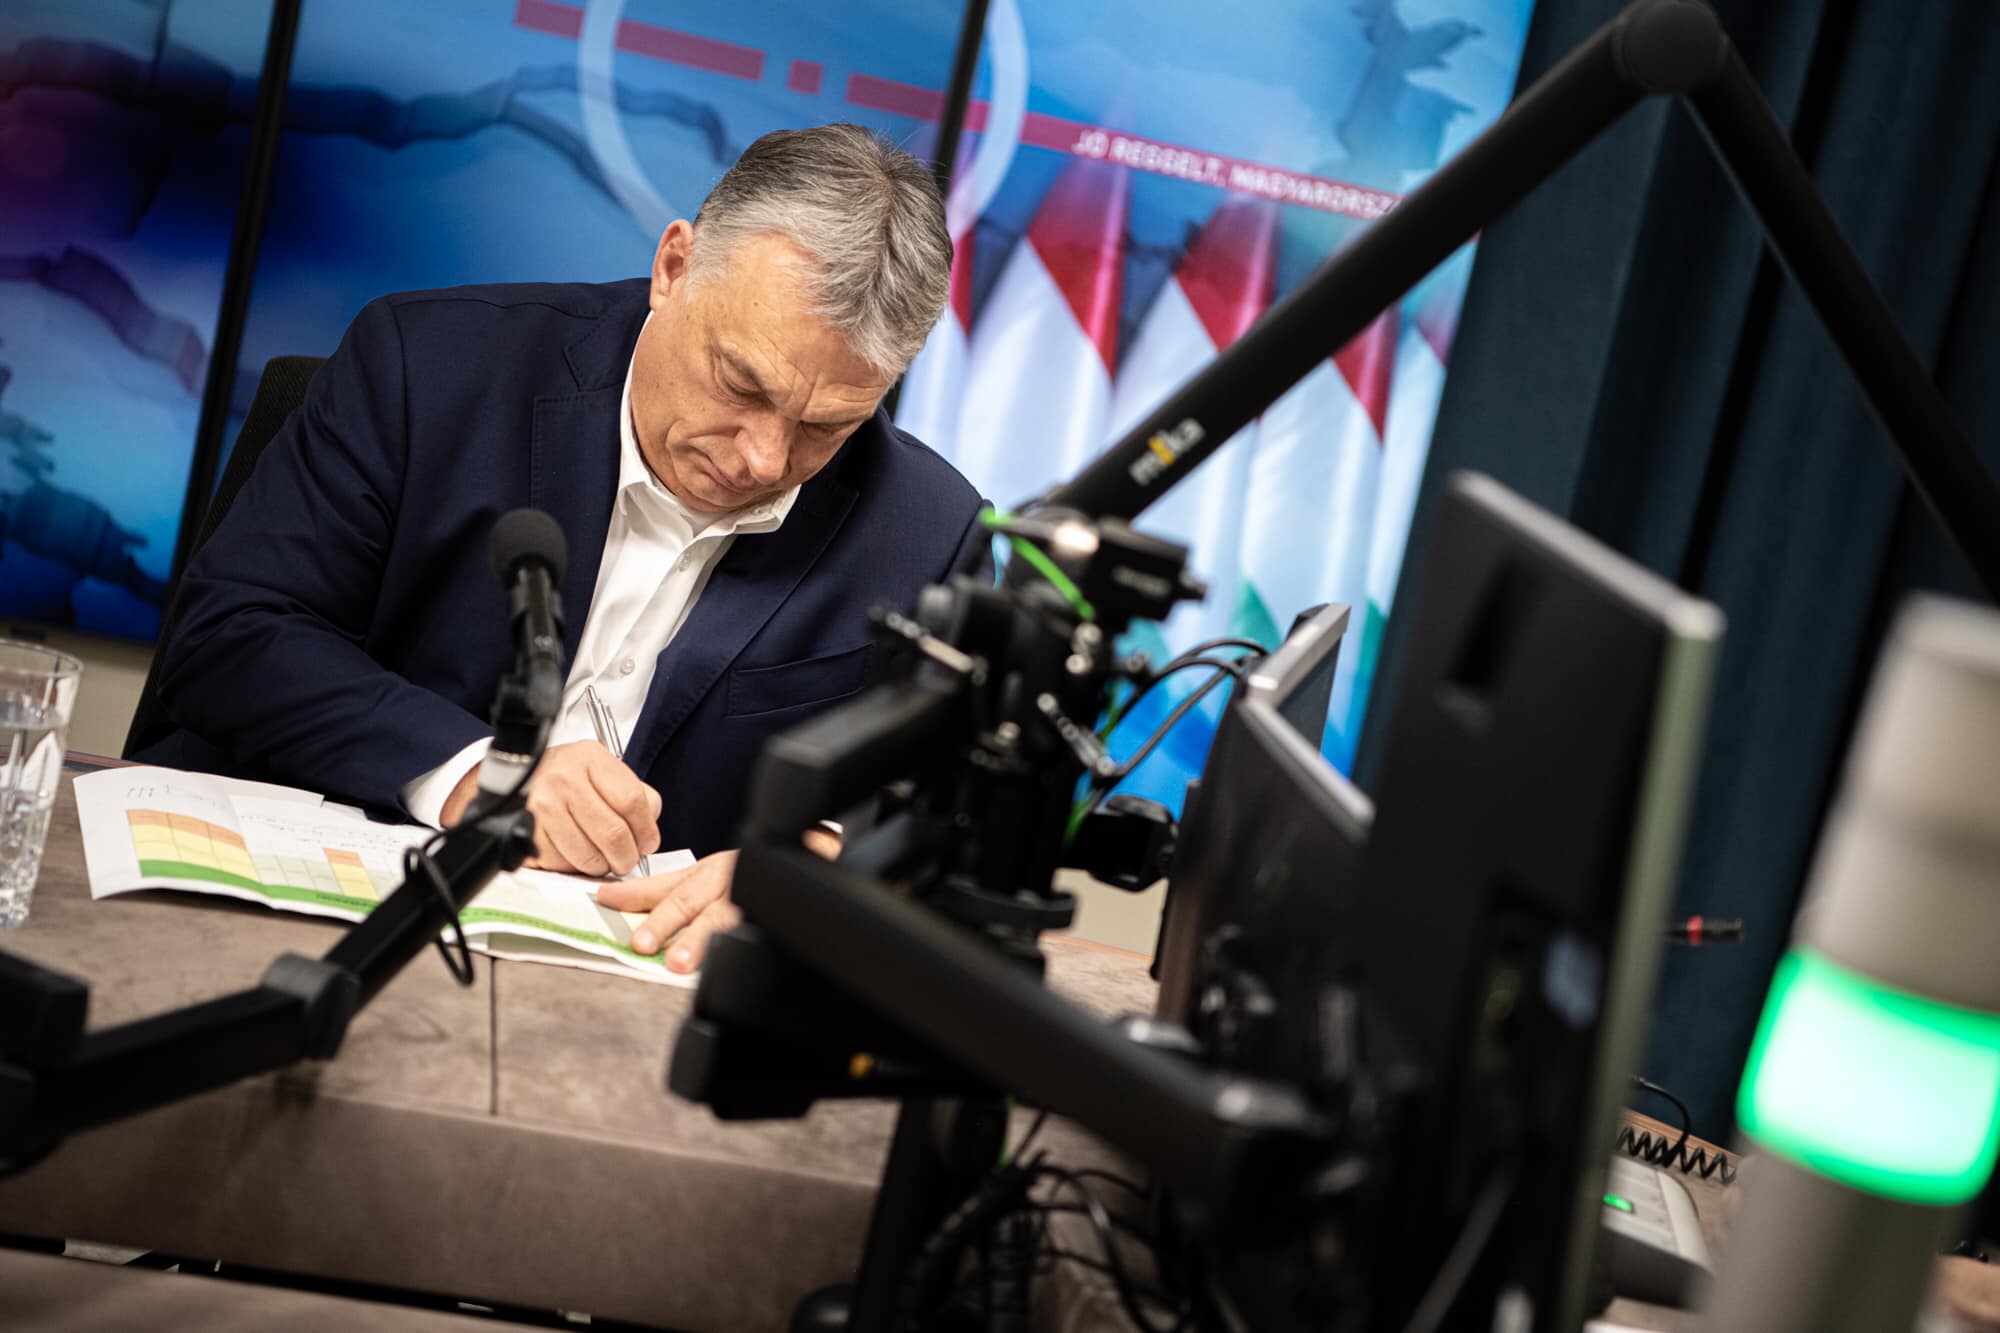 Viktor Orbán: Wir befinden uns in einer sehr gefährlichen Situation